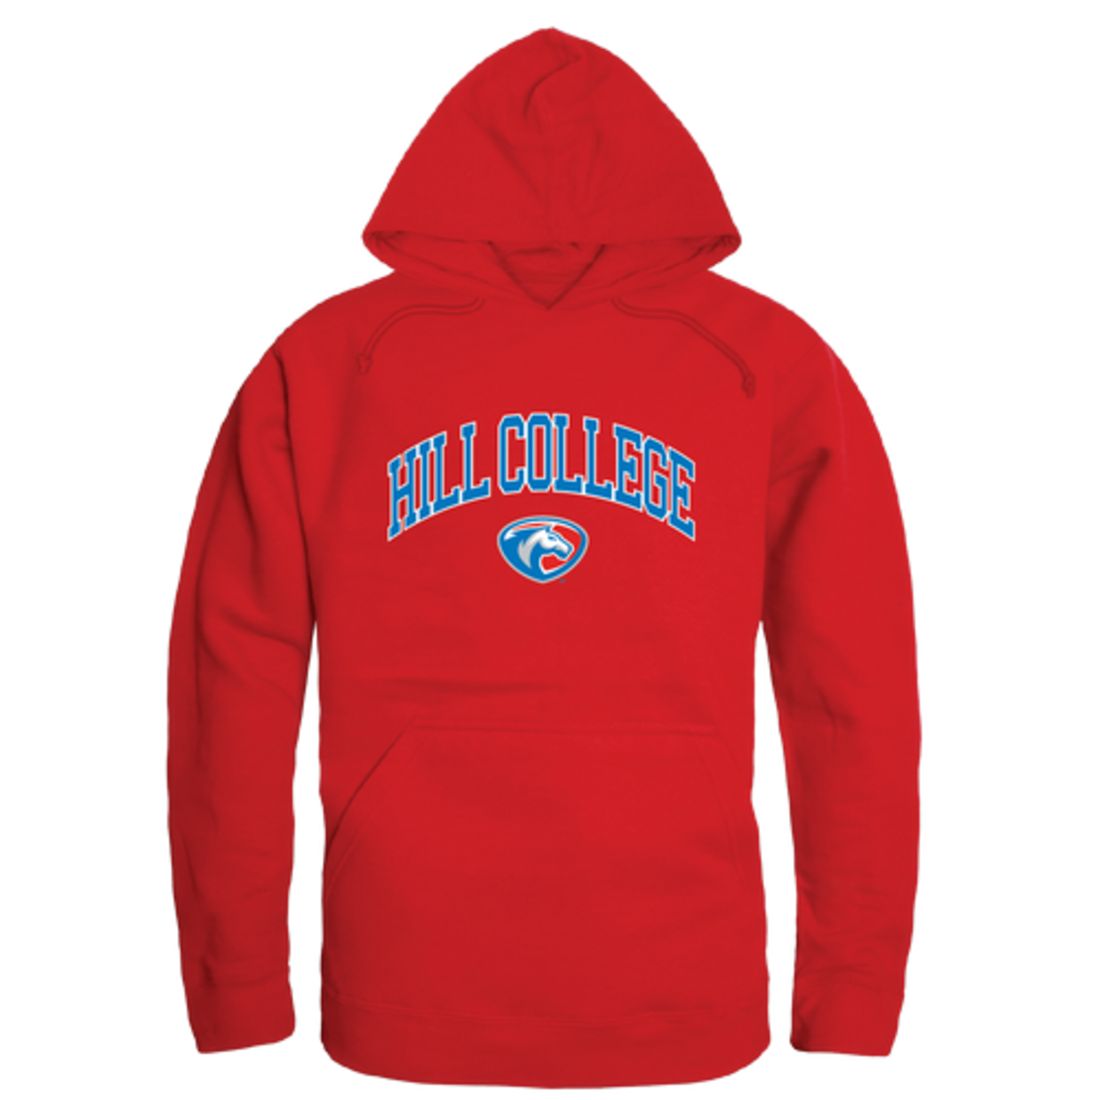 Hill College Rebels Campus Fleece Hoodie Sweatshirts